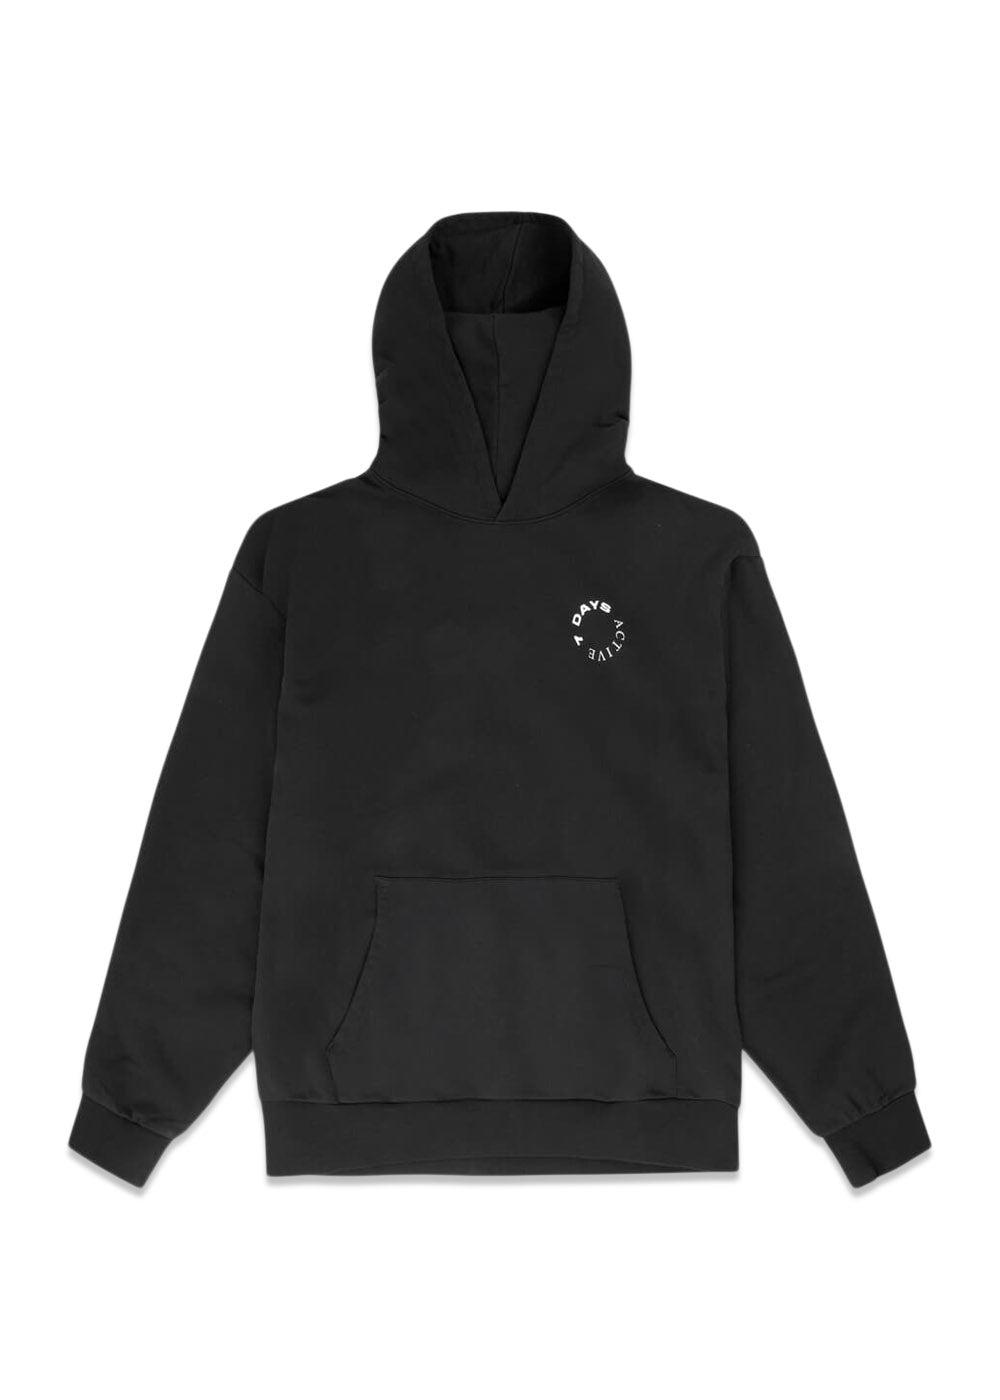 7 Days' Organic Hoodie - Black. Køb hoodies her.